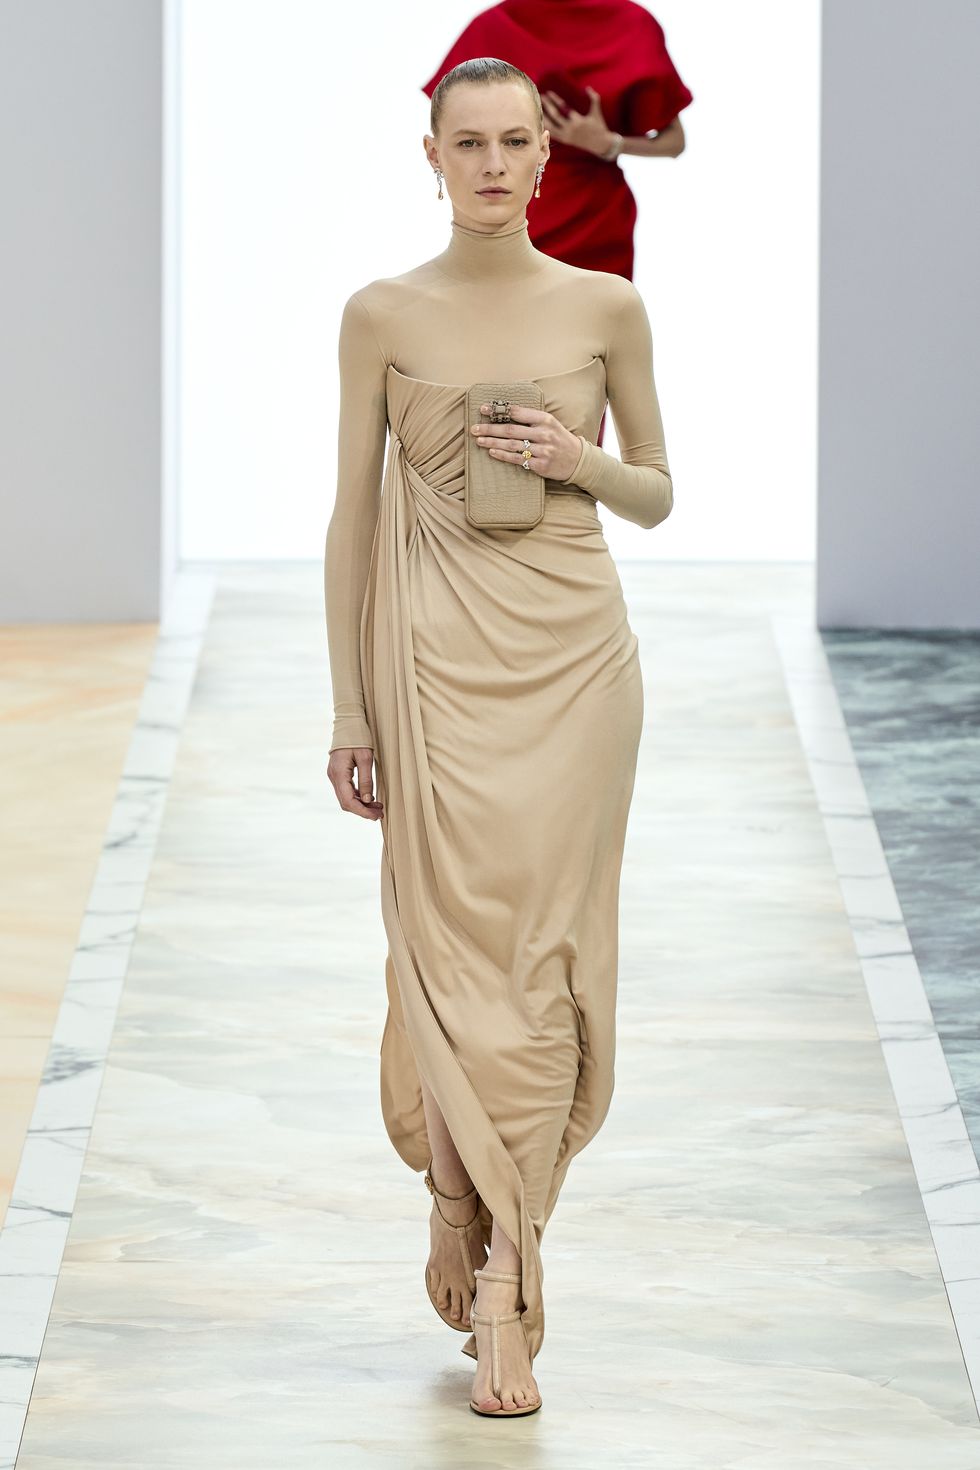 nicole kidman lleva el vestido escultura en color nude y drapeado que hace cuerpazo